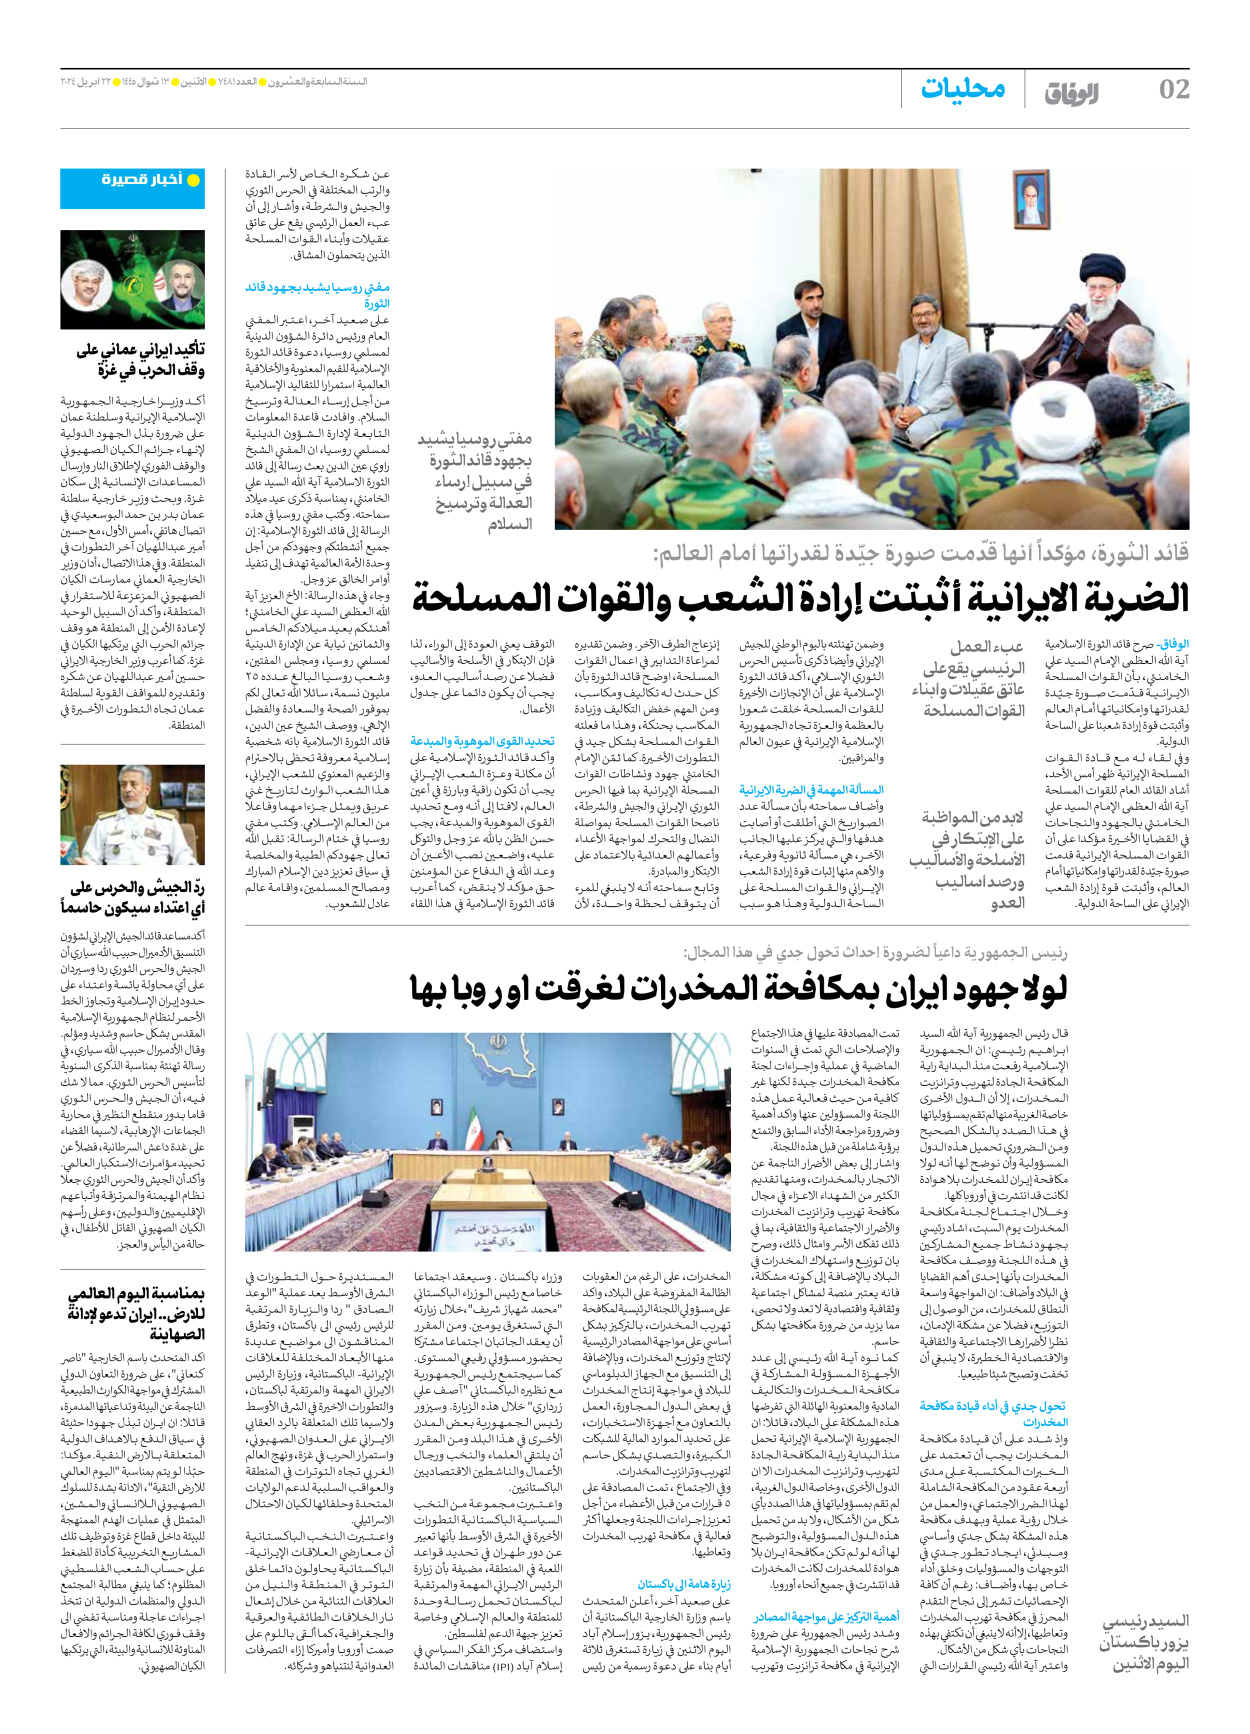 صحیفة ایران الدولیة الوفاق - العدد سبعة آلاف وأربعمائة وواحد وثمانون - ٢٢ أبريل ٢٠٢٤ - الصفحة ۲